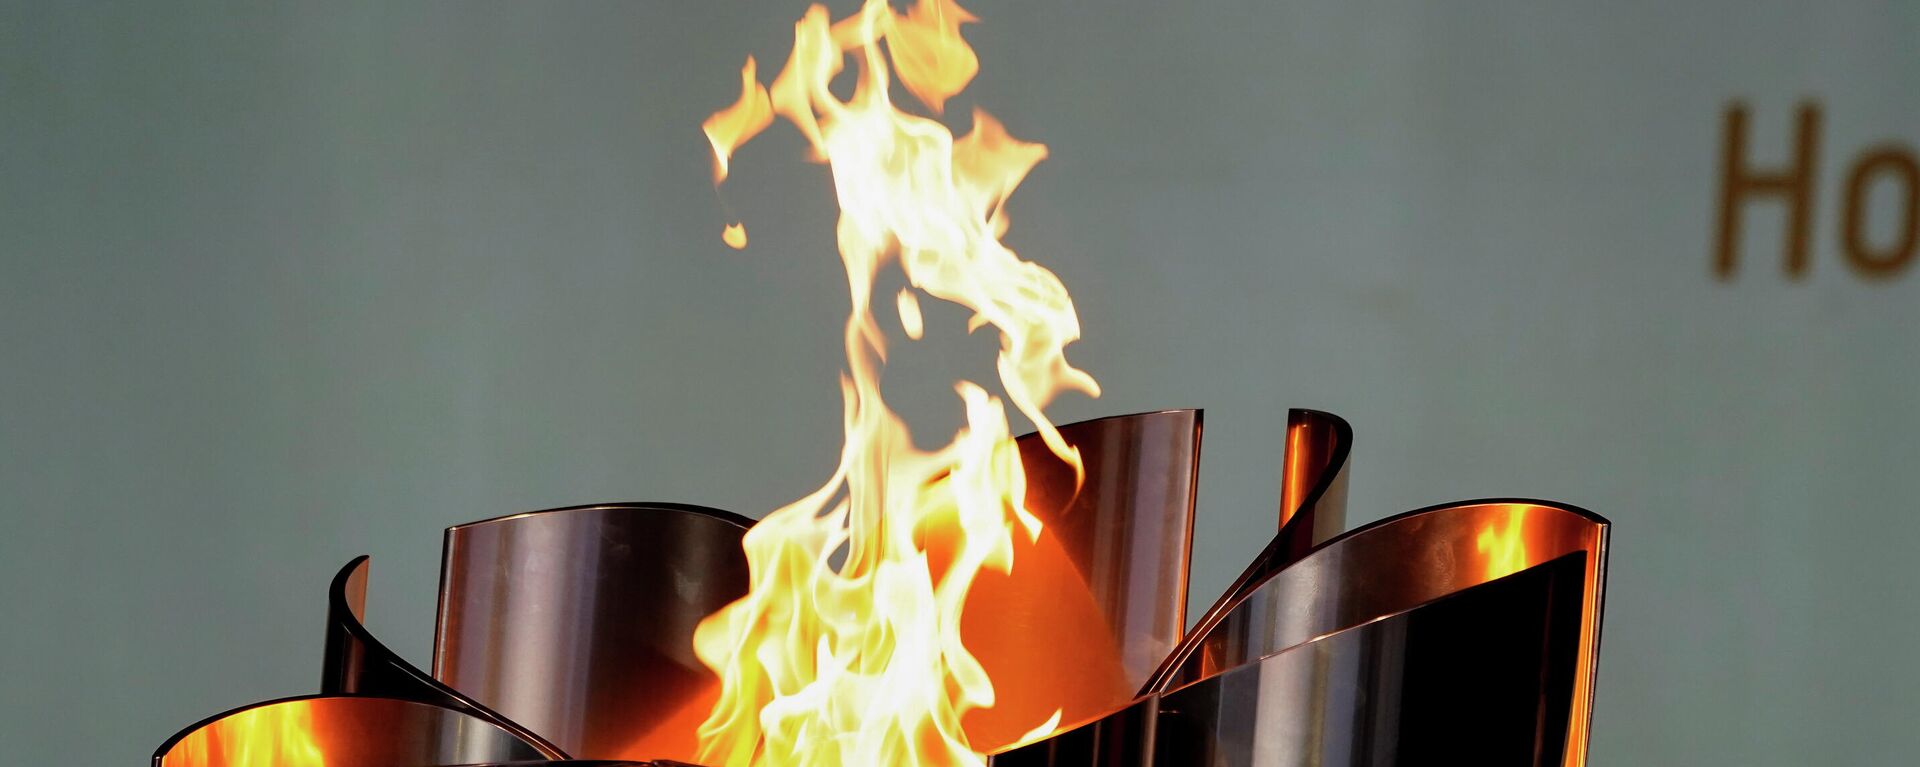 Олимпийский факел на Олимпиаде 2020 в Токио - Sputnik Литва, 1920, 22.07.2021